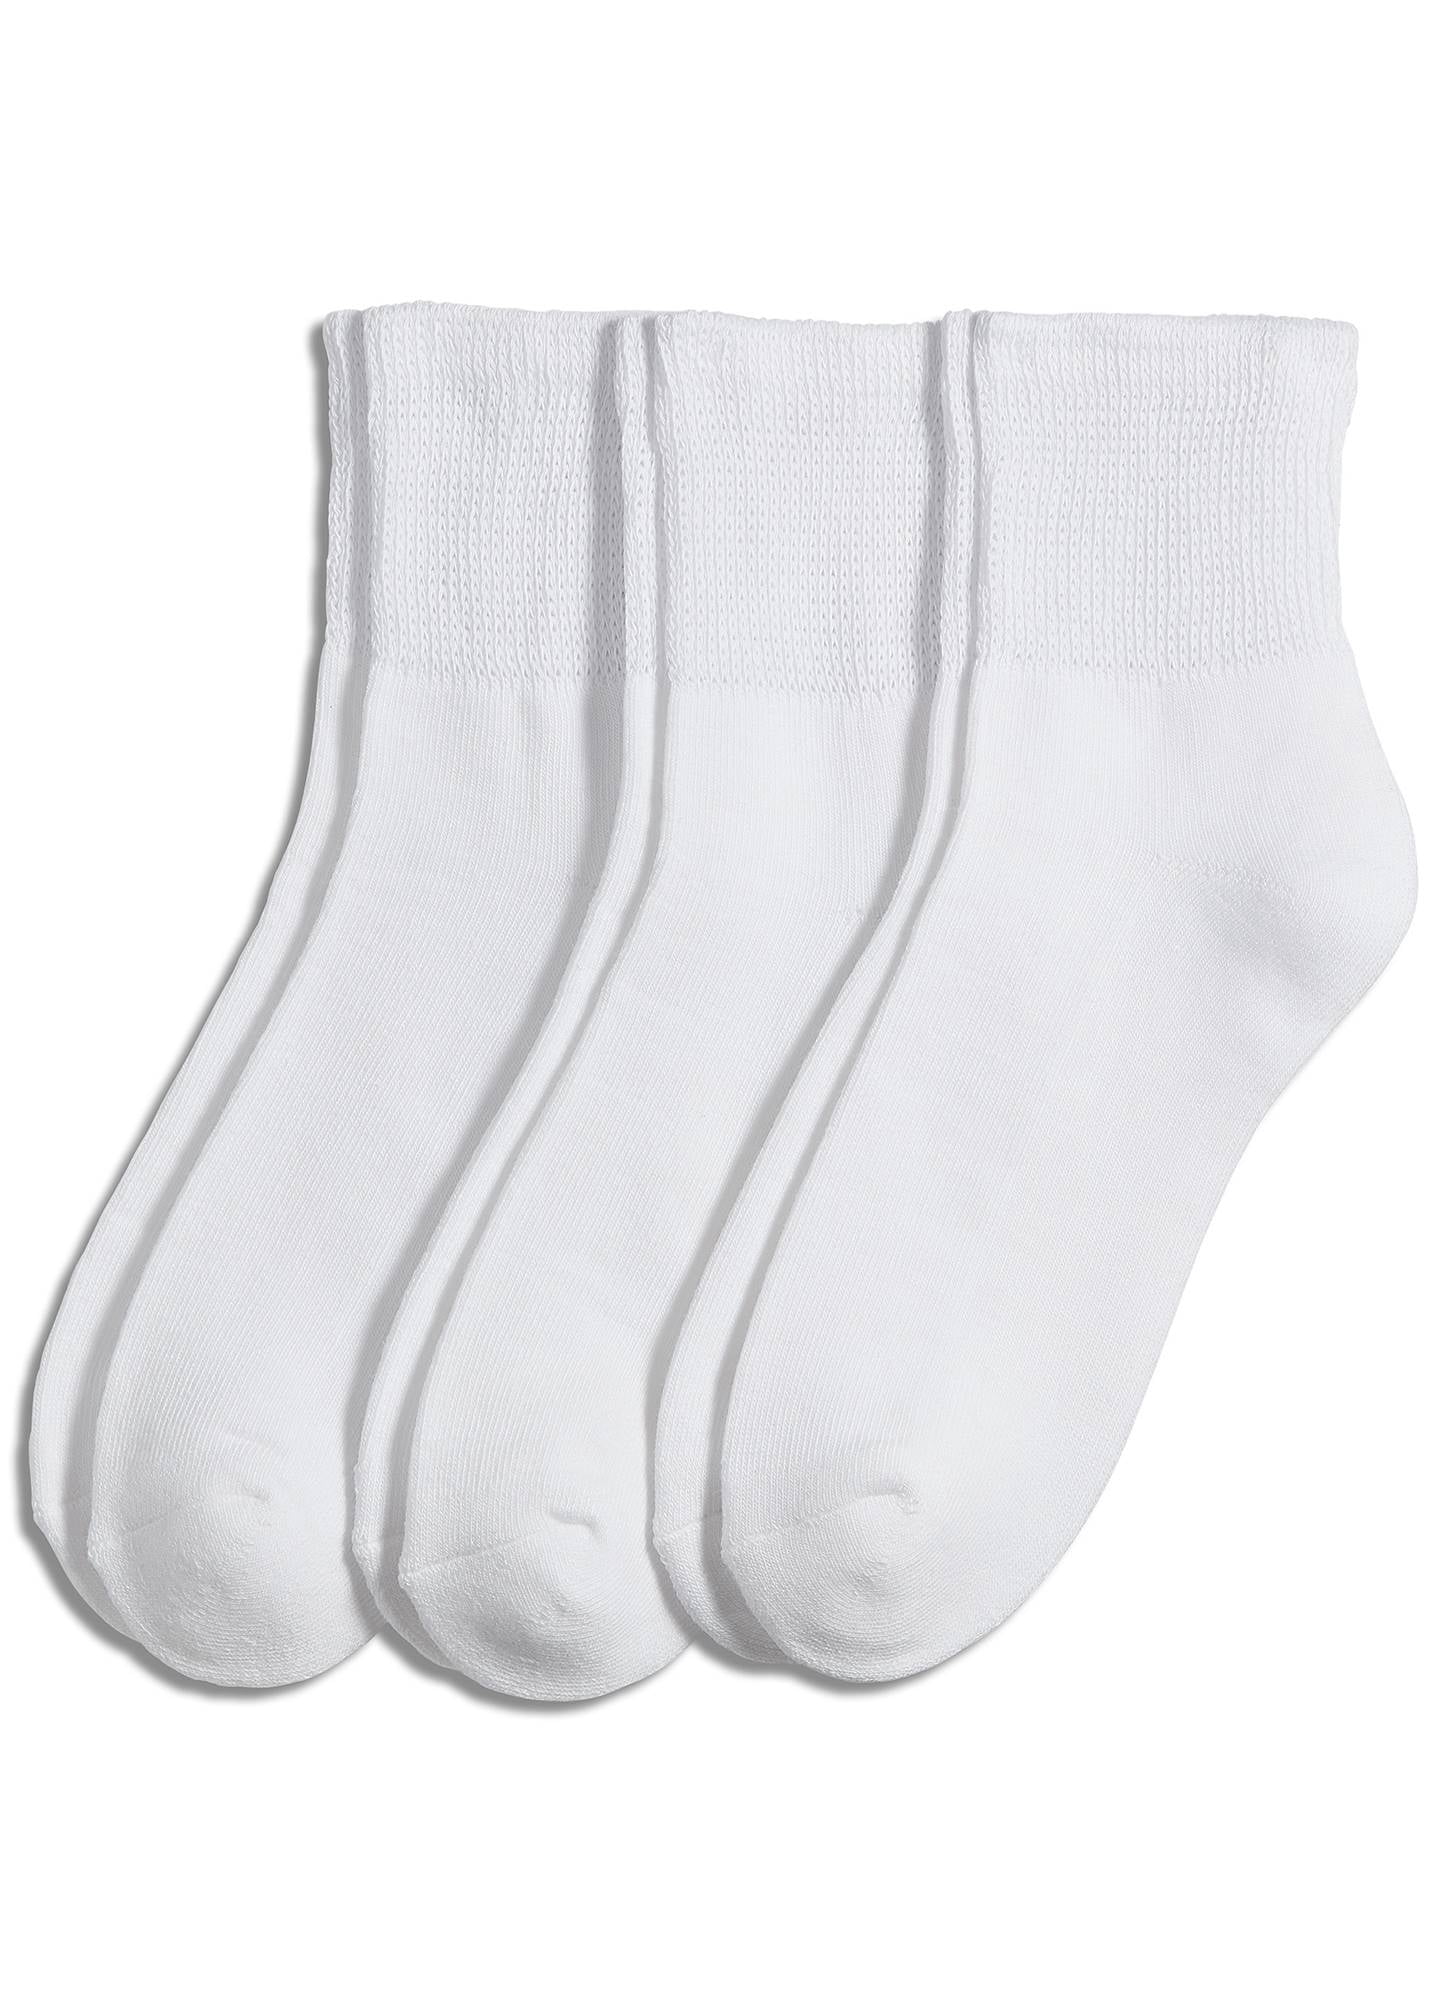 Jockey Men's Non-Binding Quarter Socks - 3 Pack - Walmart.com